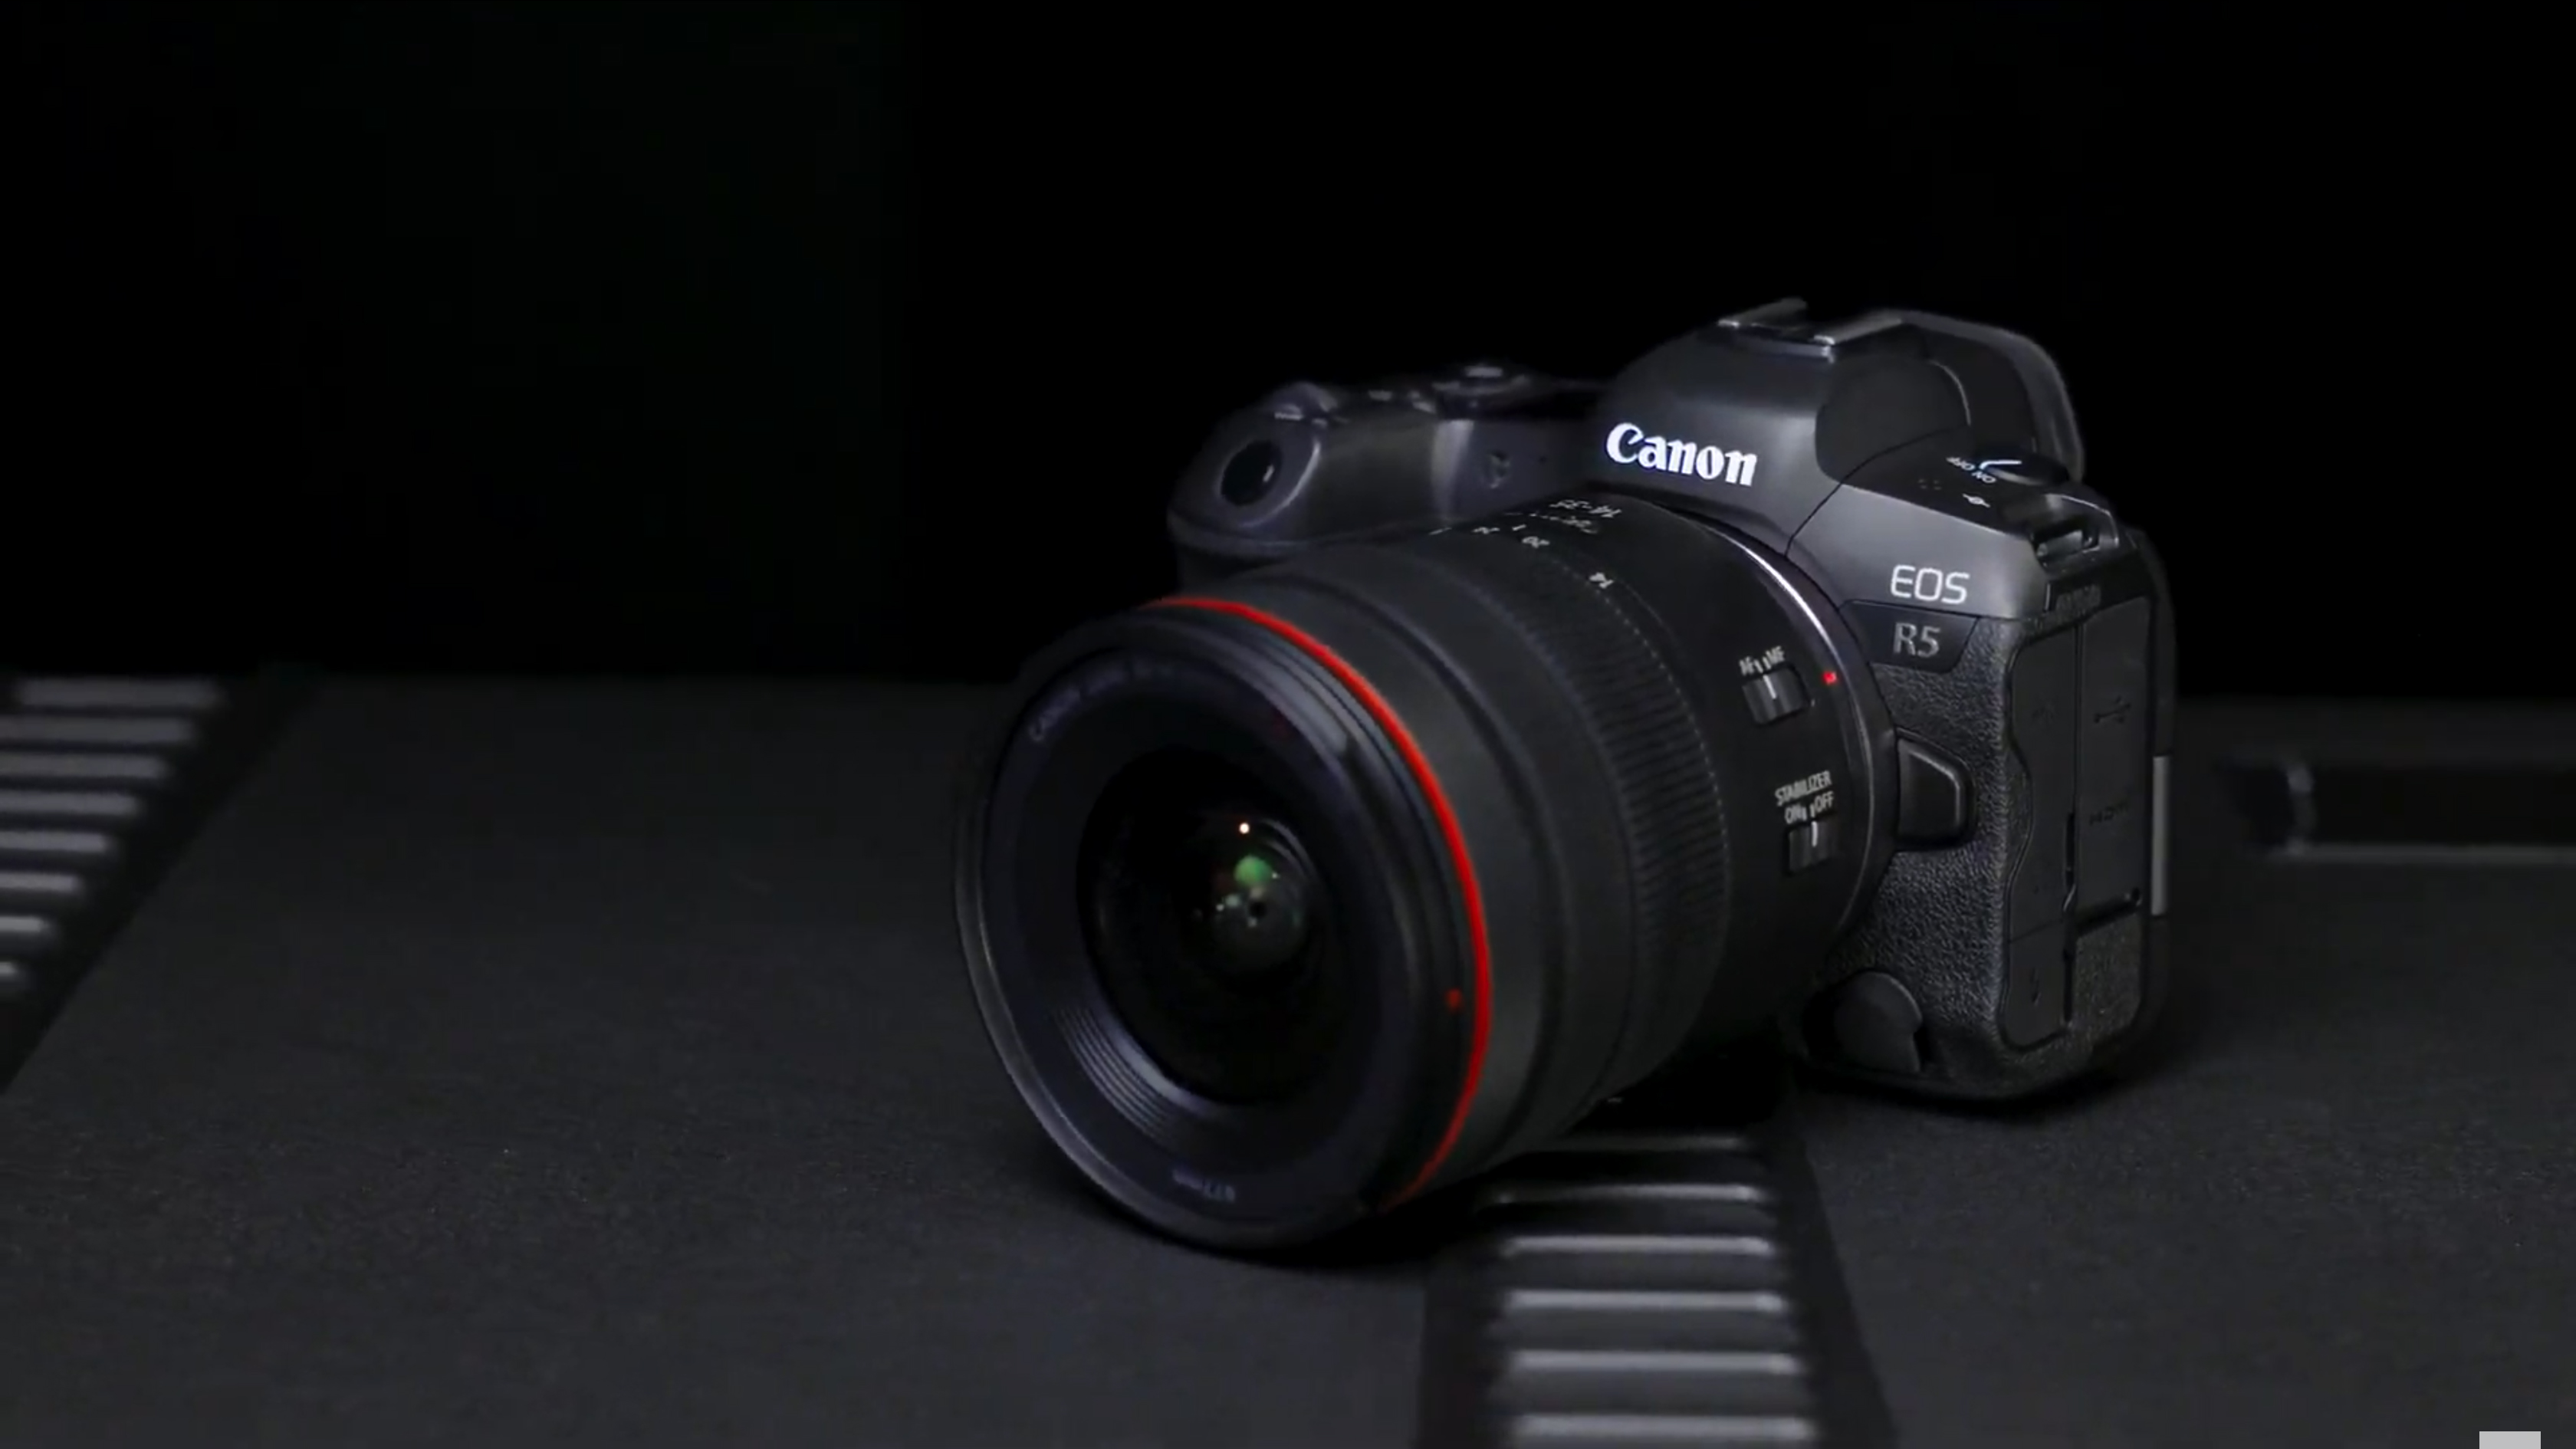 The Canon EOS R5 C camera